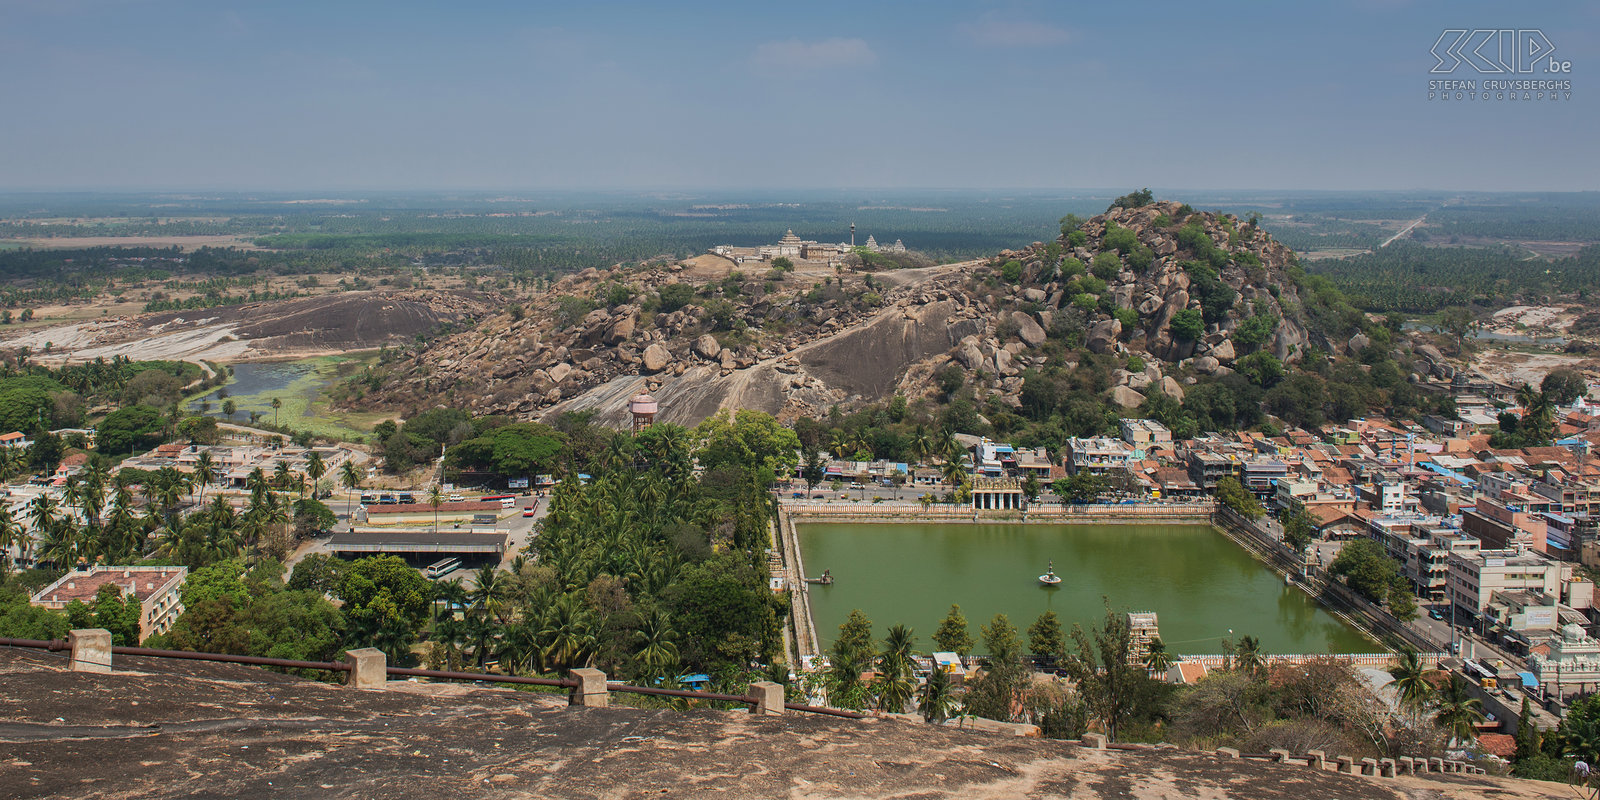 Shravanabelagola Shravanabelagola is een kleine stad in de Indiase deelstaat Karnataka tussen Hassan en Bangalore. Shravanabelagola heeft twee heuvels, Chandragiri en Vindhyagiri die beide belangrijke bedevaartsoorden in het jainisme zijn. Op de top van de Vindyagiri heuvel staat er een kolossaal wit standbeeld van Gommateshvara Bahubali. Stefan Cruysberghs